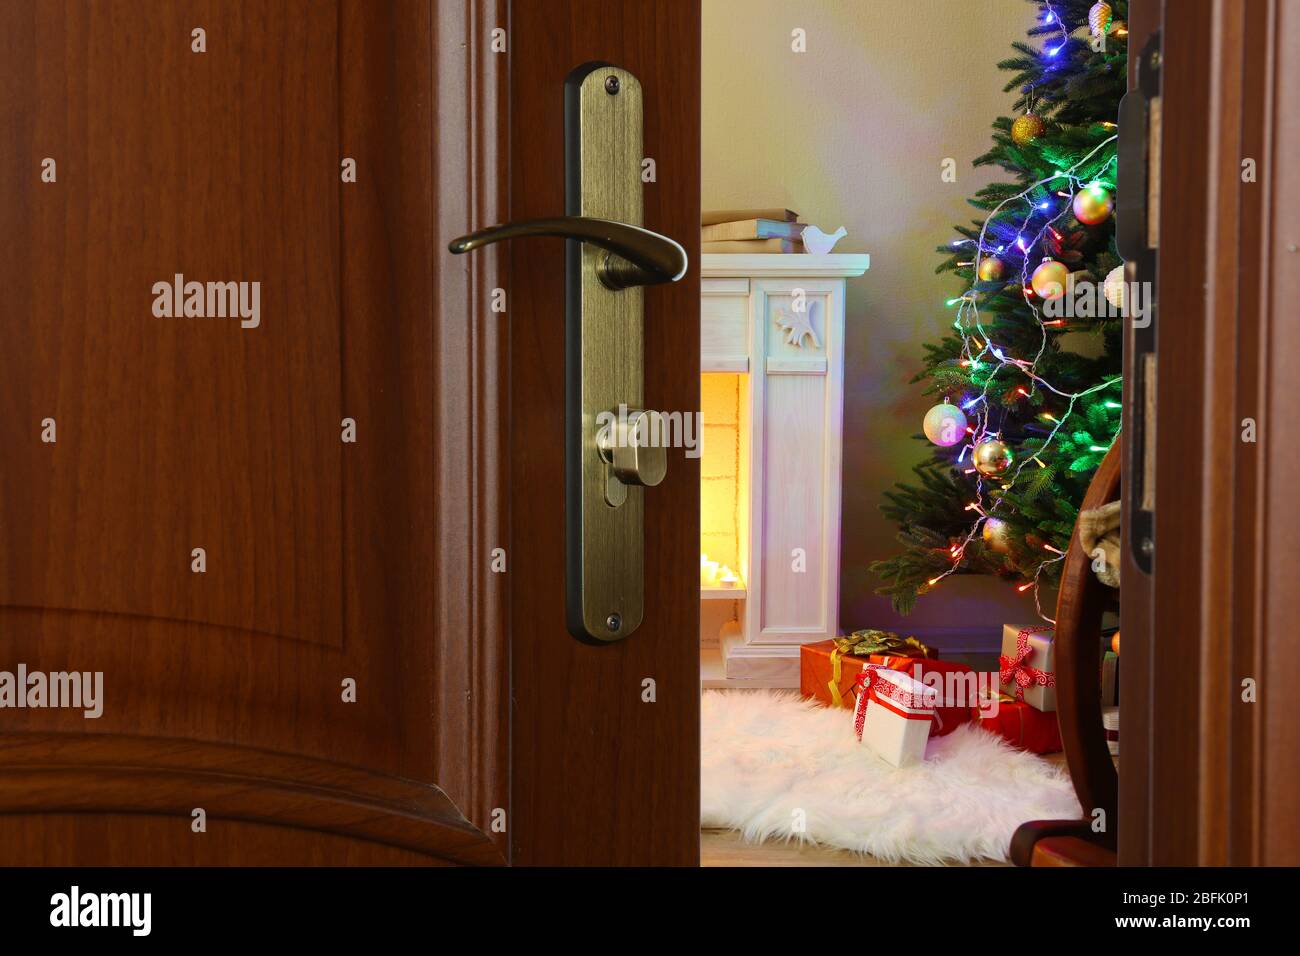 Offene Tür mit geschmücktem Weihnachtsbaum im Zimmer Stockfoto